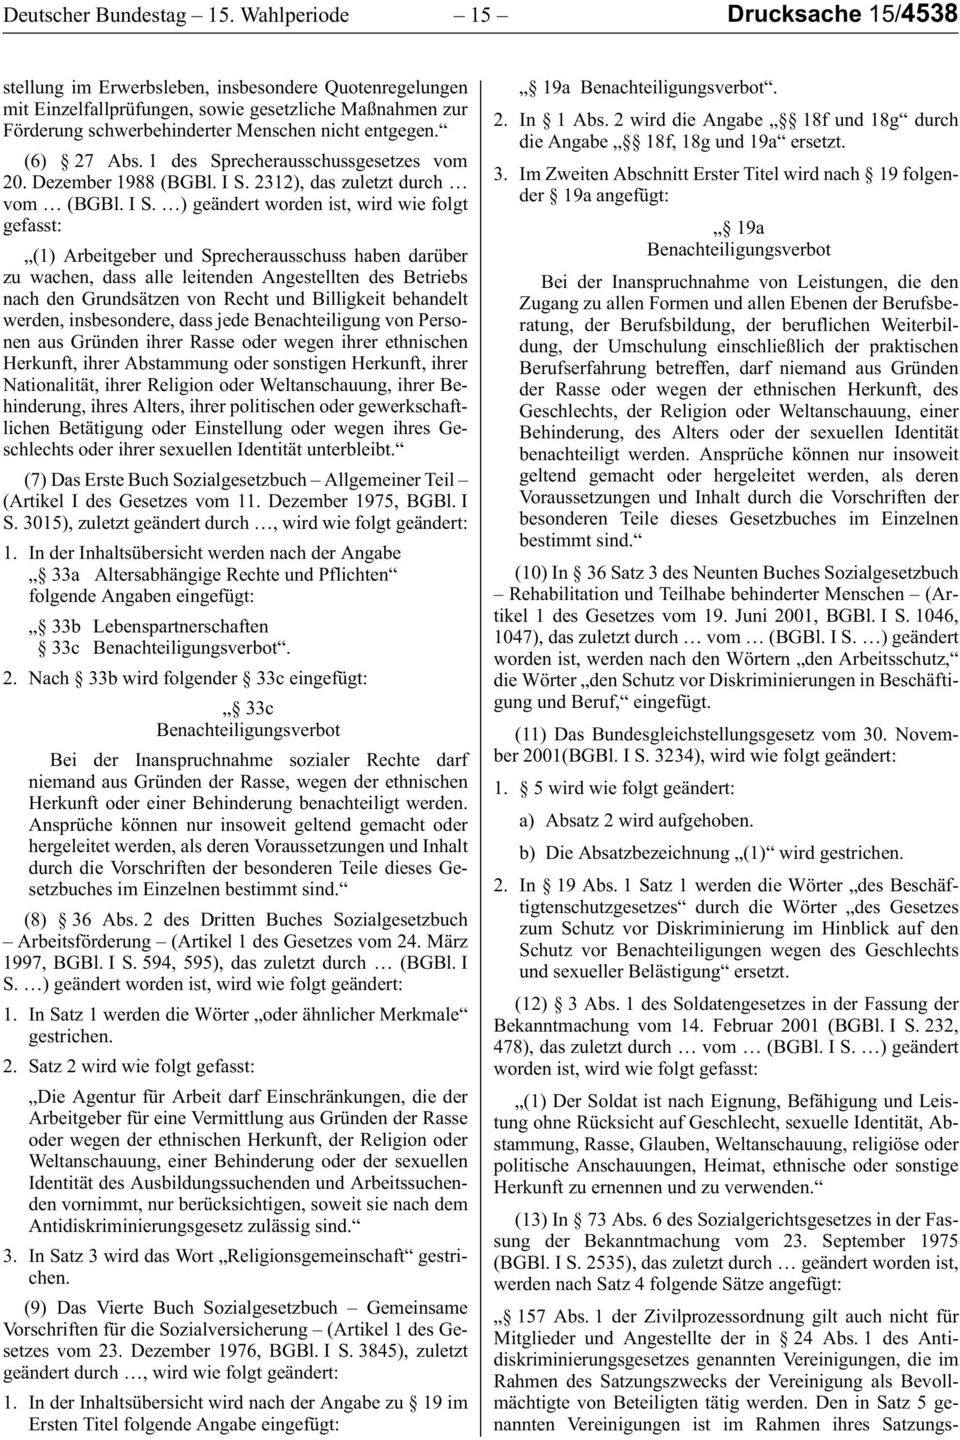 (6) 27 Abs. 1 des Sprecherausschussgesetzes vom 20. Dezember 1988 (BGBl. I S.